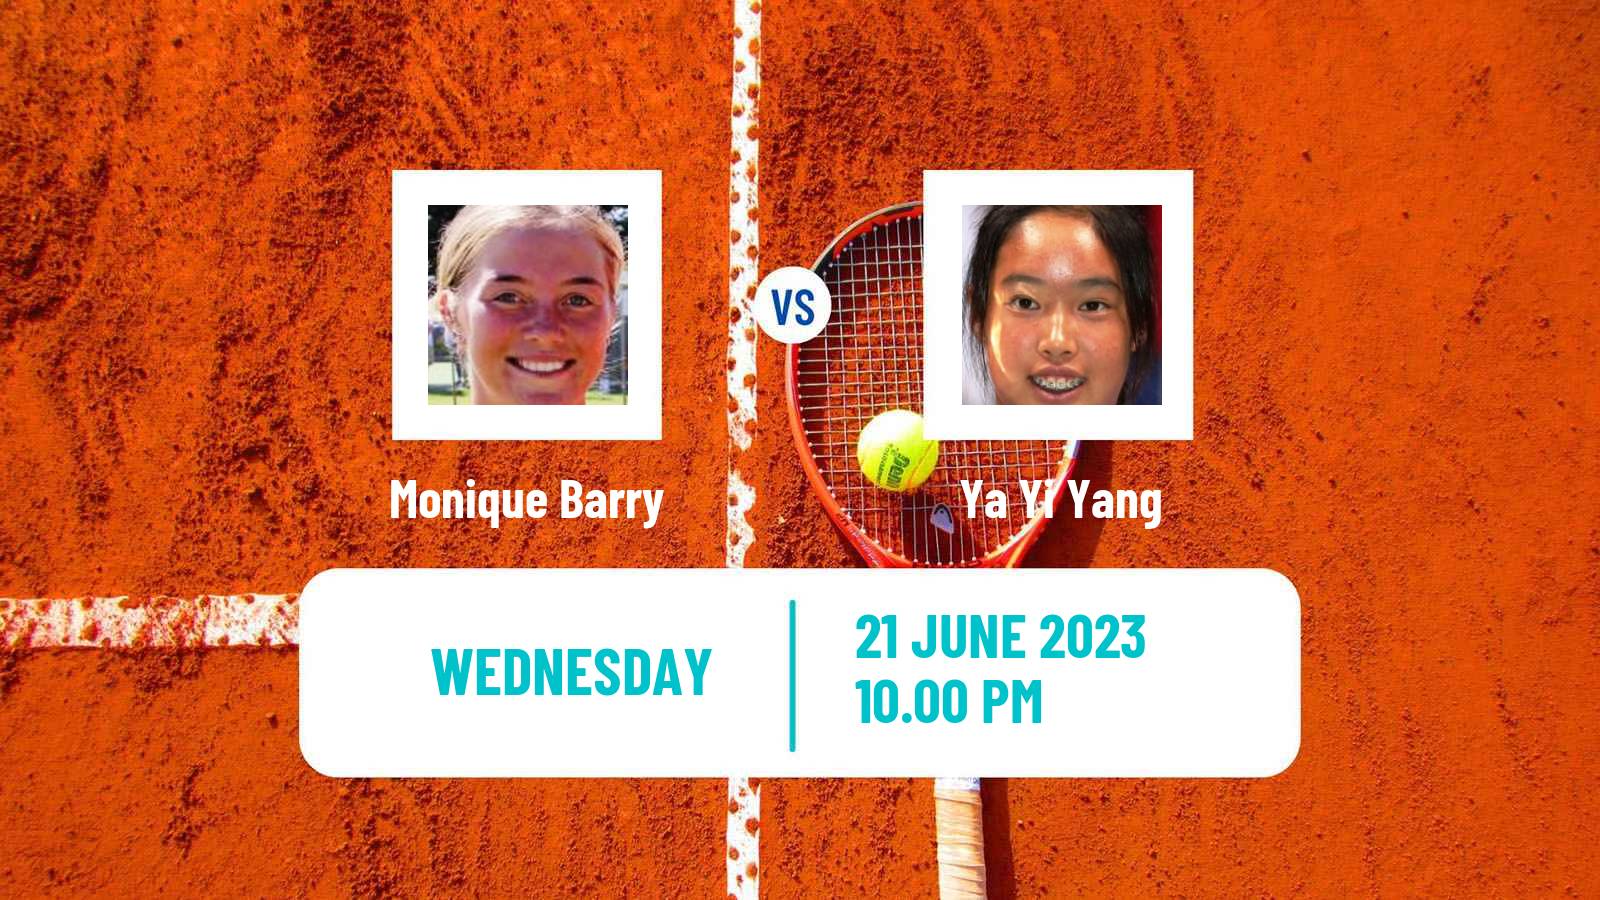 Tennis ITF W25 Tainan 2 Women Monique Barry - Ya Yi Yang